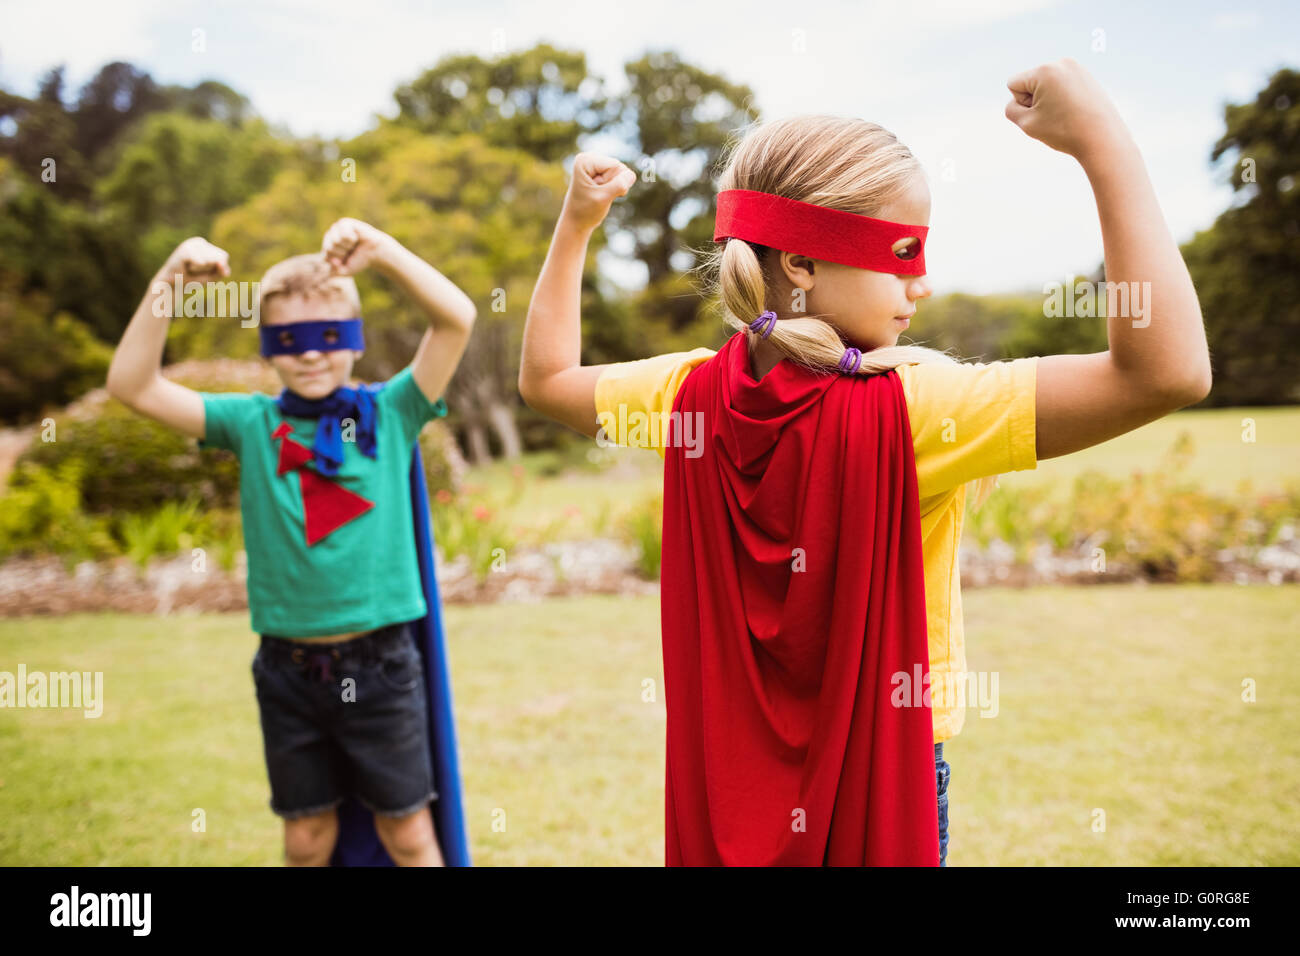 Kinder Superhelden-Kostüm posiert für die Kamera Stockfoto